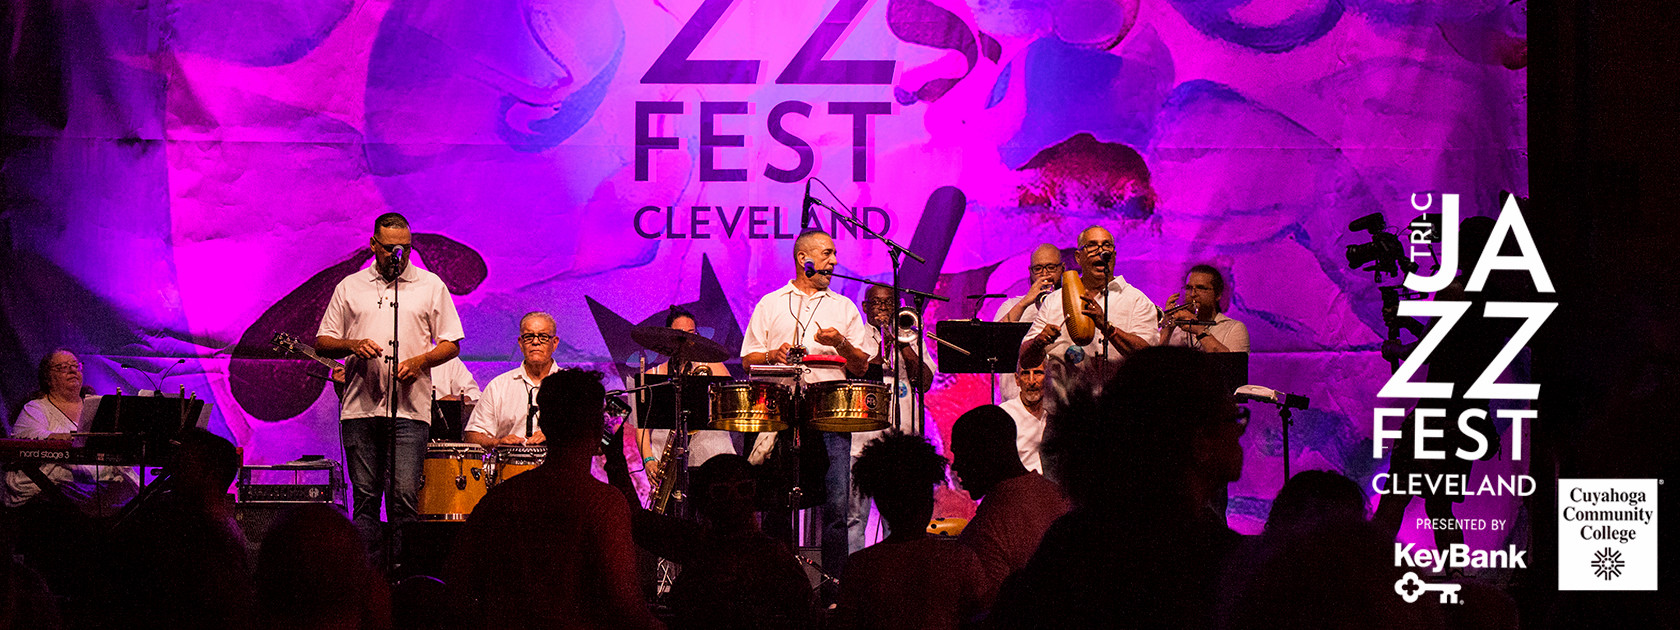 Tri-C JazzFest Cleveland presented by KeyBank